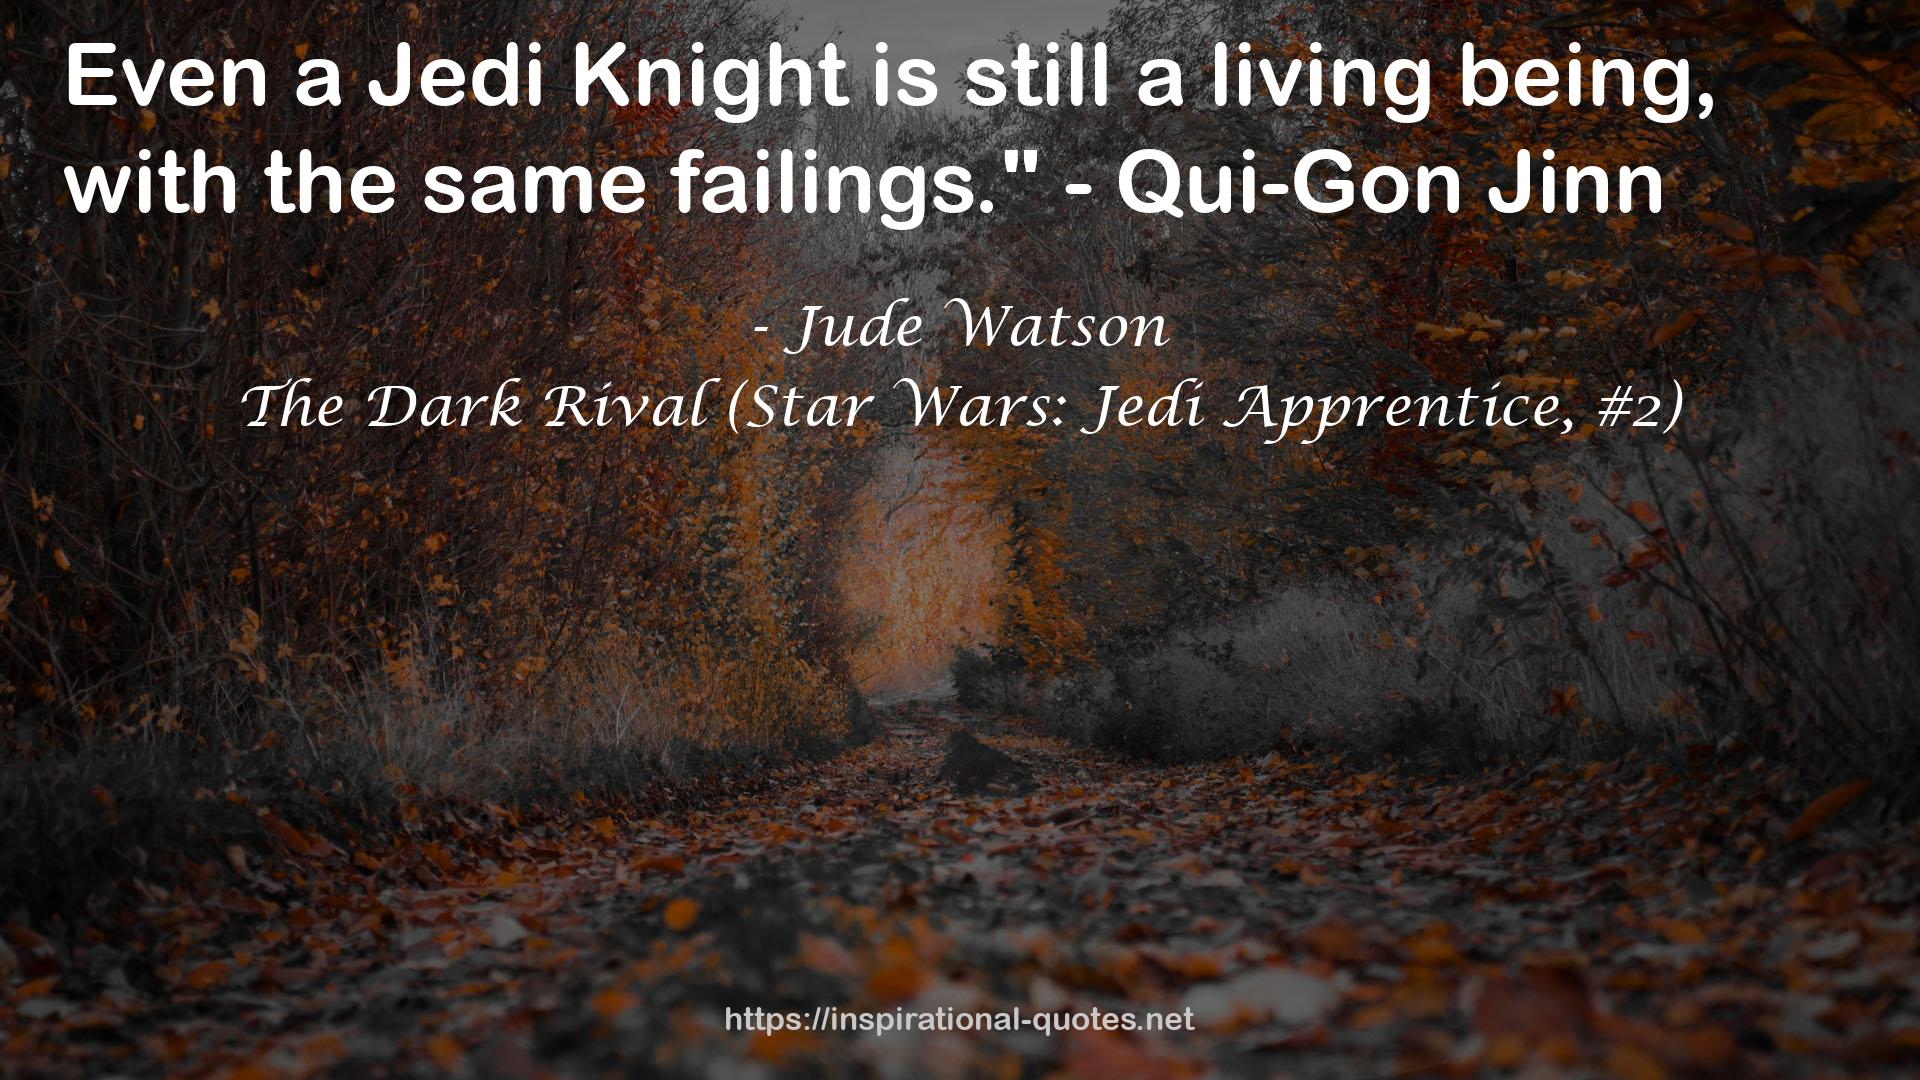 The Dark Rival (Star Wars: Jedi Apprentice, #2) QUOTES